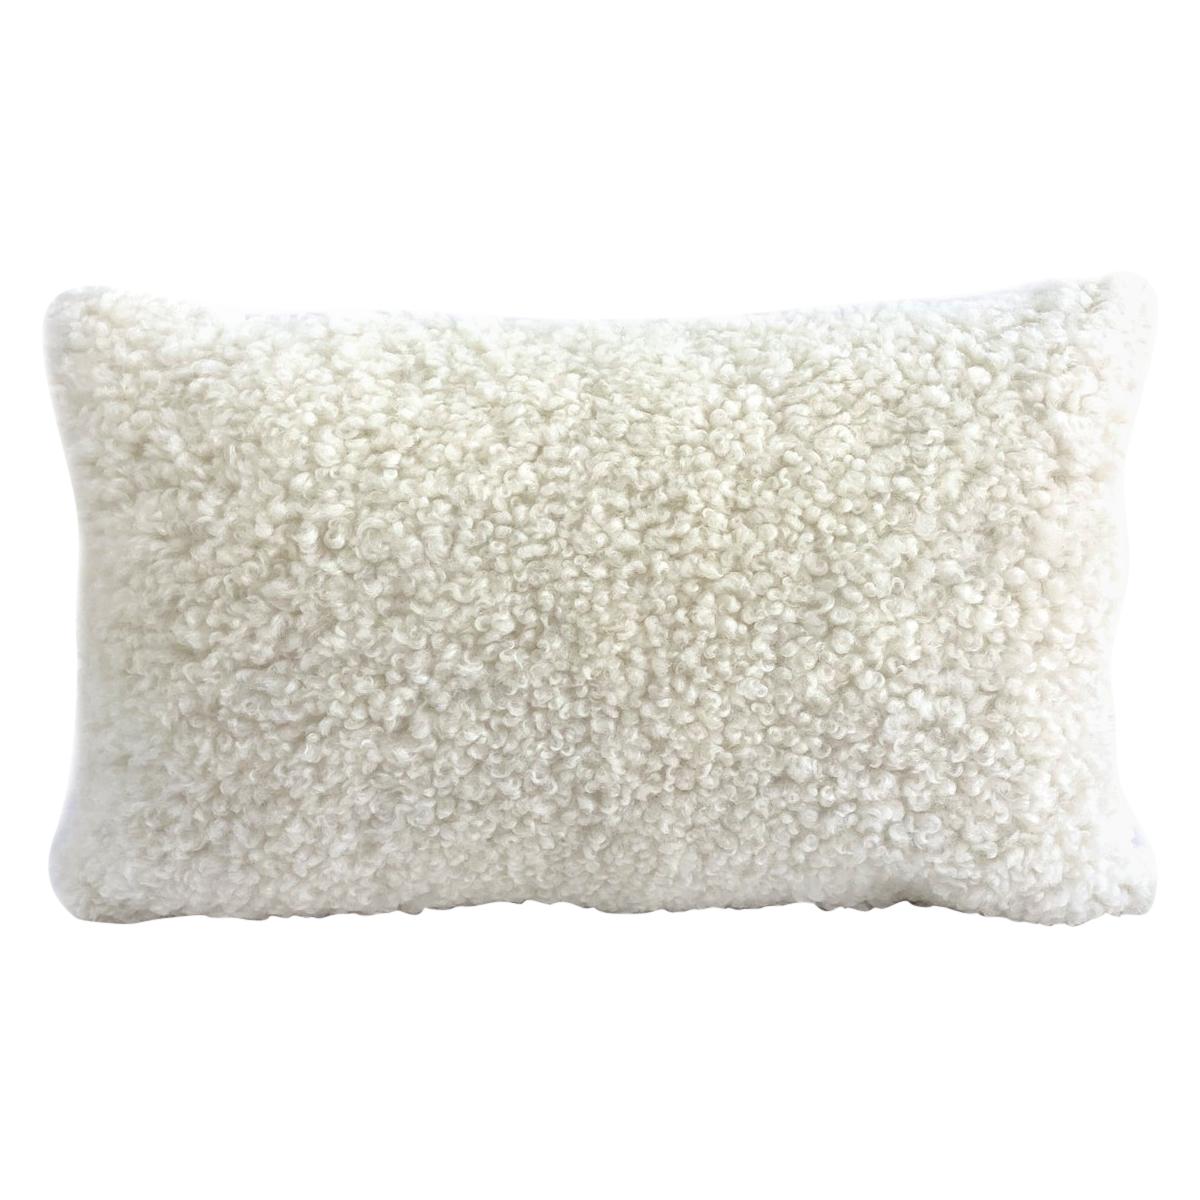 Sheepskin Shearling Pillow Lumbar - White 35*60cm  14*24" For Sale